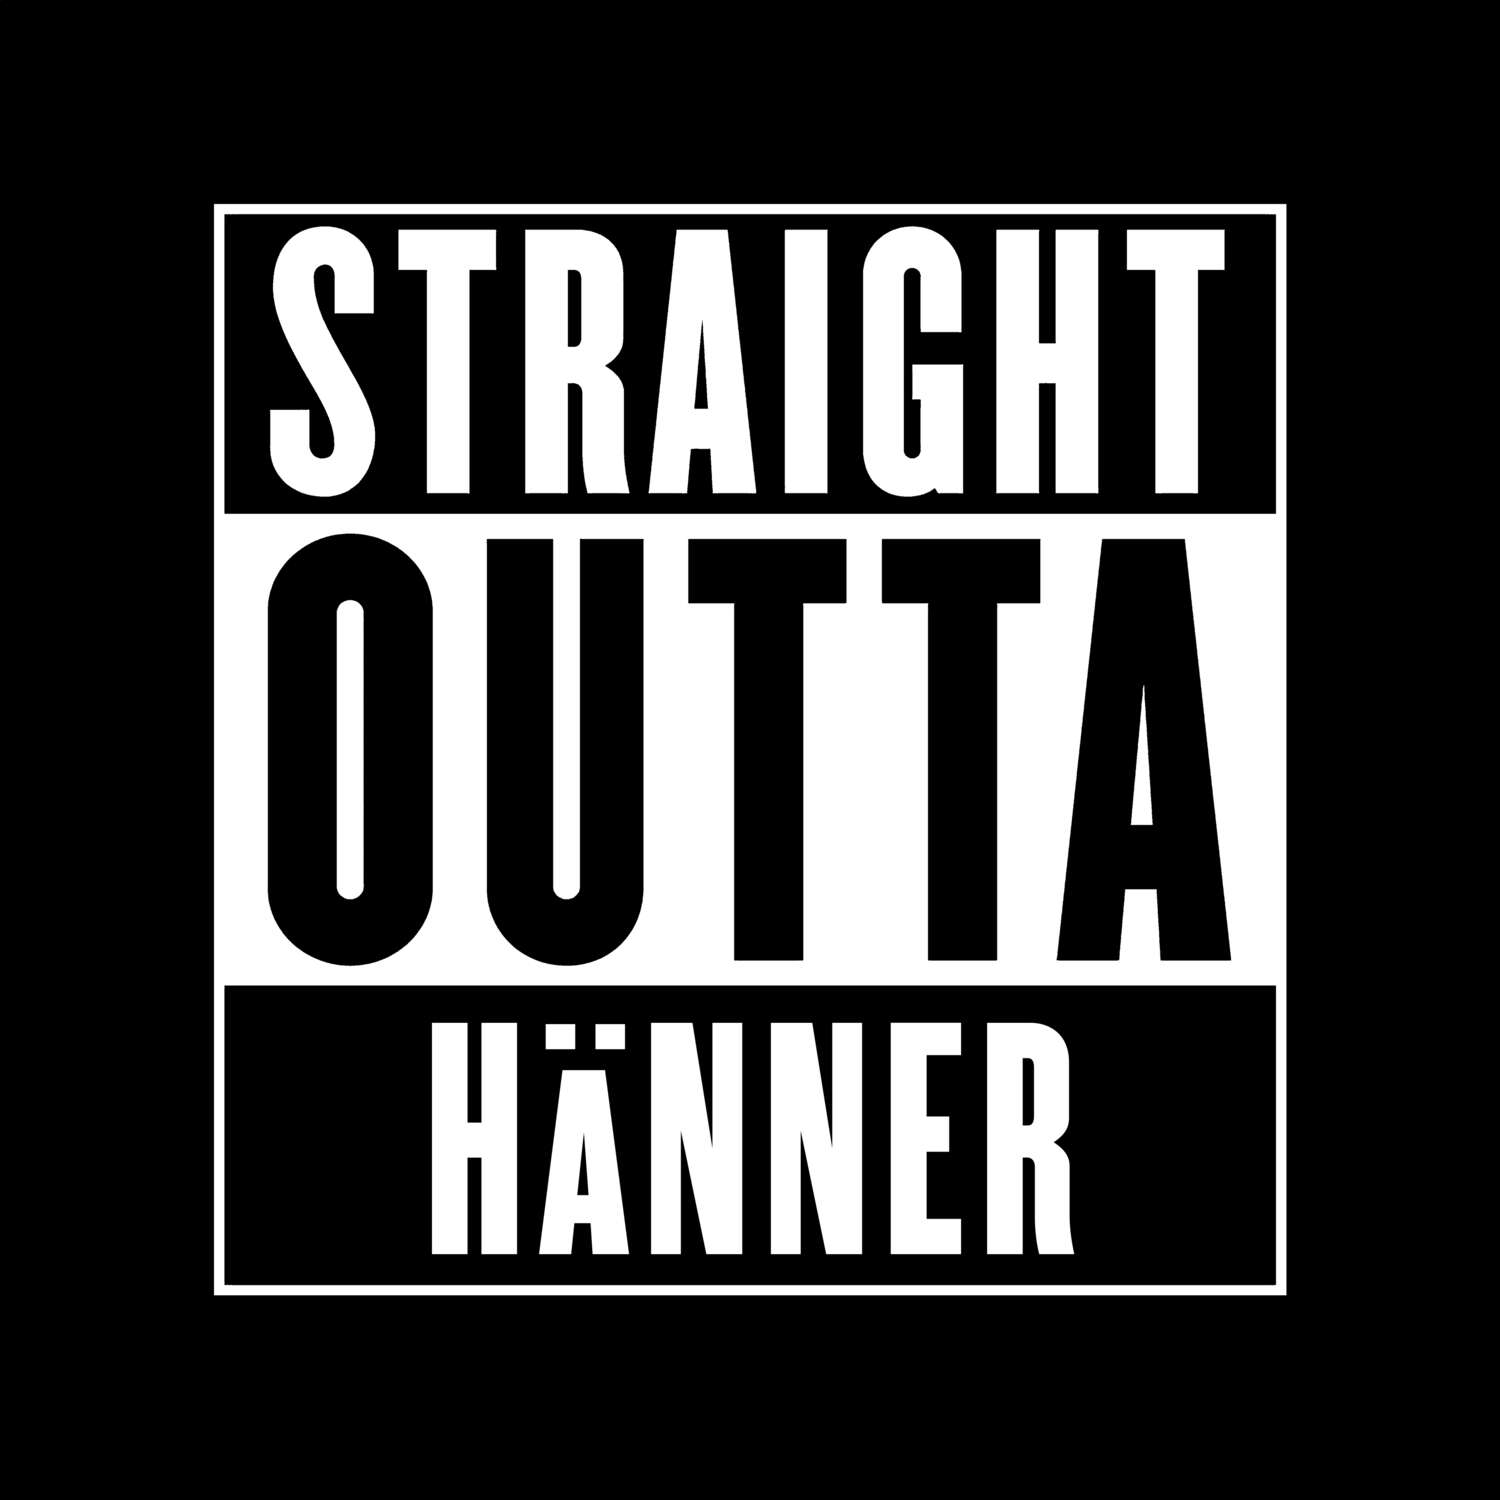 Hänner T-Shirt »Straight Outta«